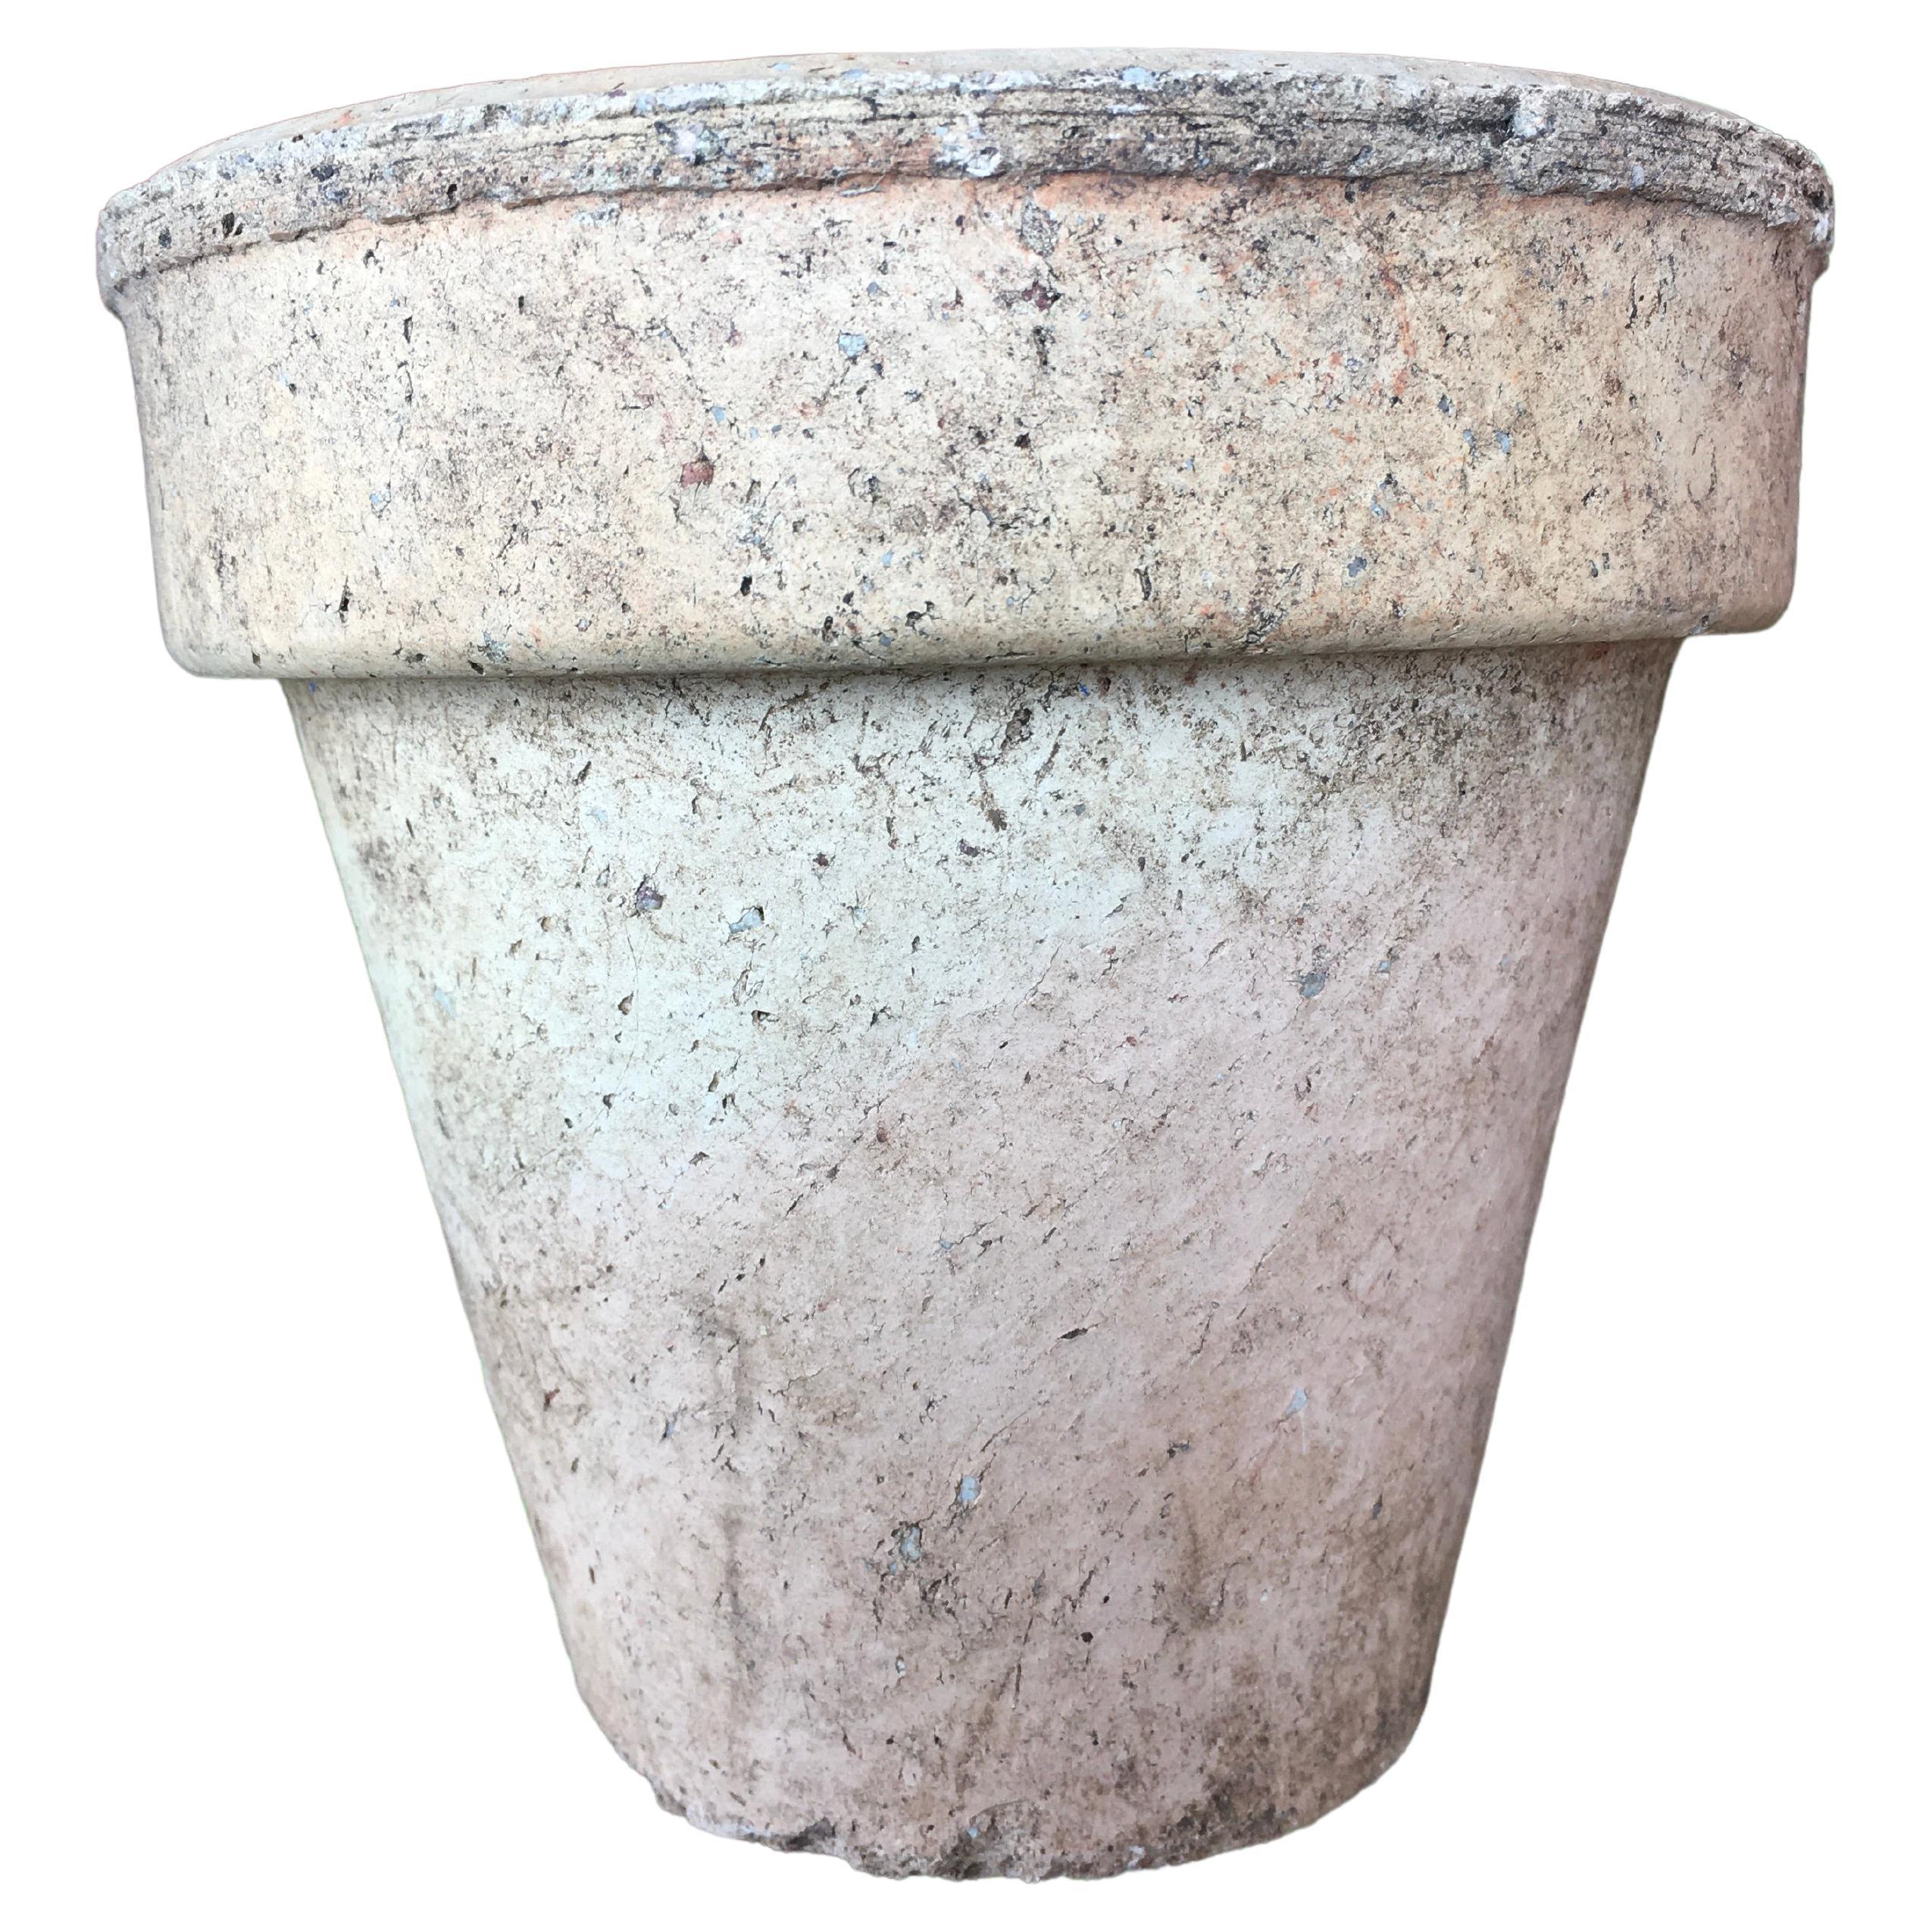 Pots originaux en terre cuite du milieu du siècle, d'un diamètre d'environ 5,3 pouces et d'une hauteur de 5 pouces, avec de belles variations de couleurs (voir les images).

Ces pots ont été fabriqués en Australie dans les années 40/50/60 par des